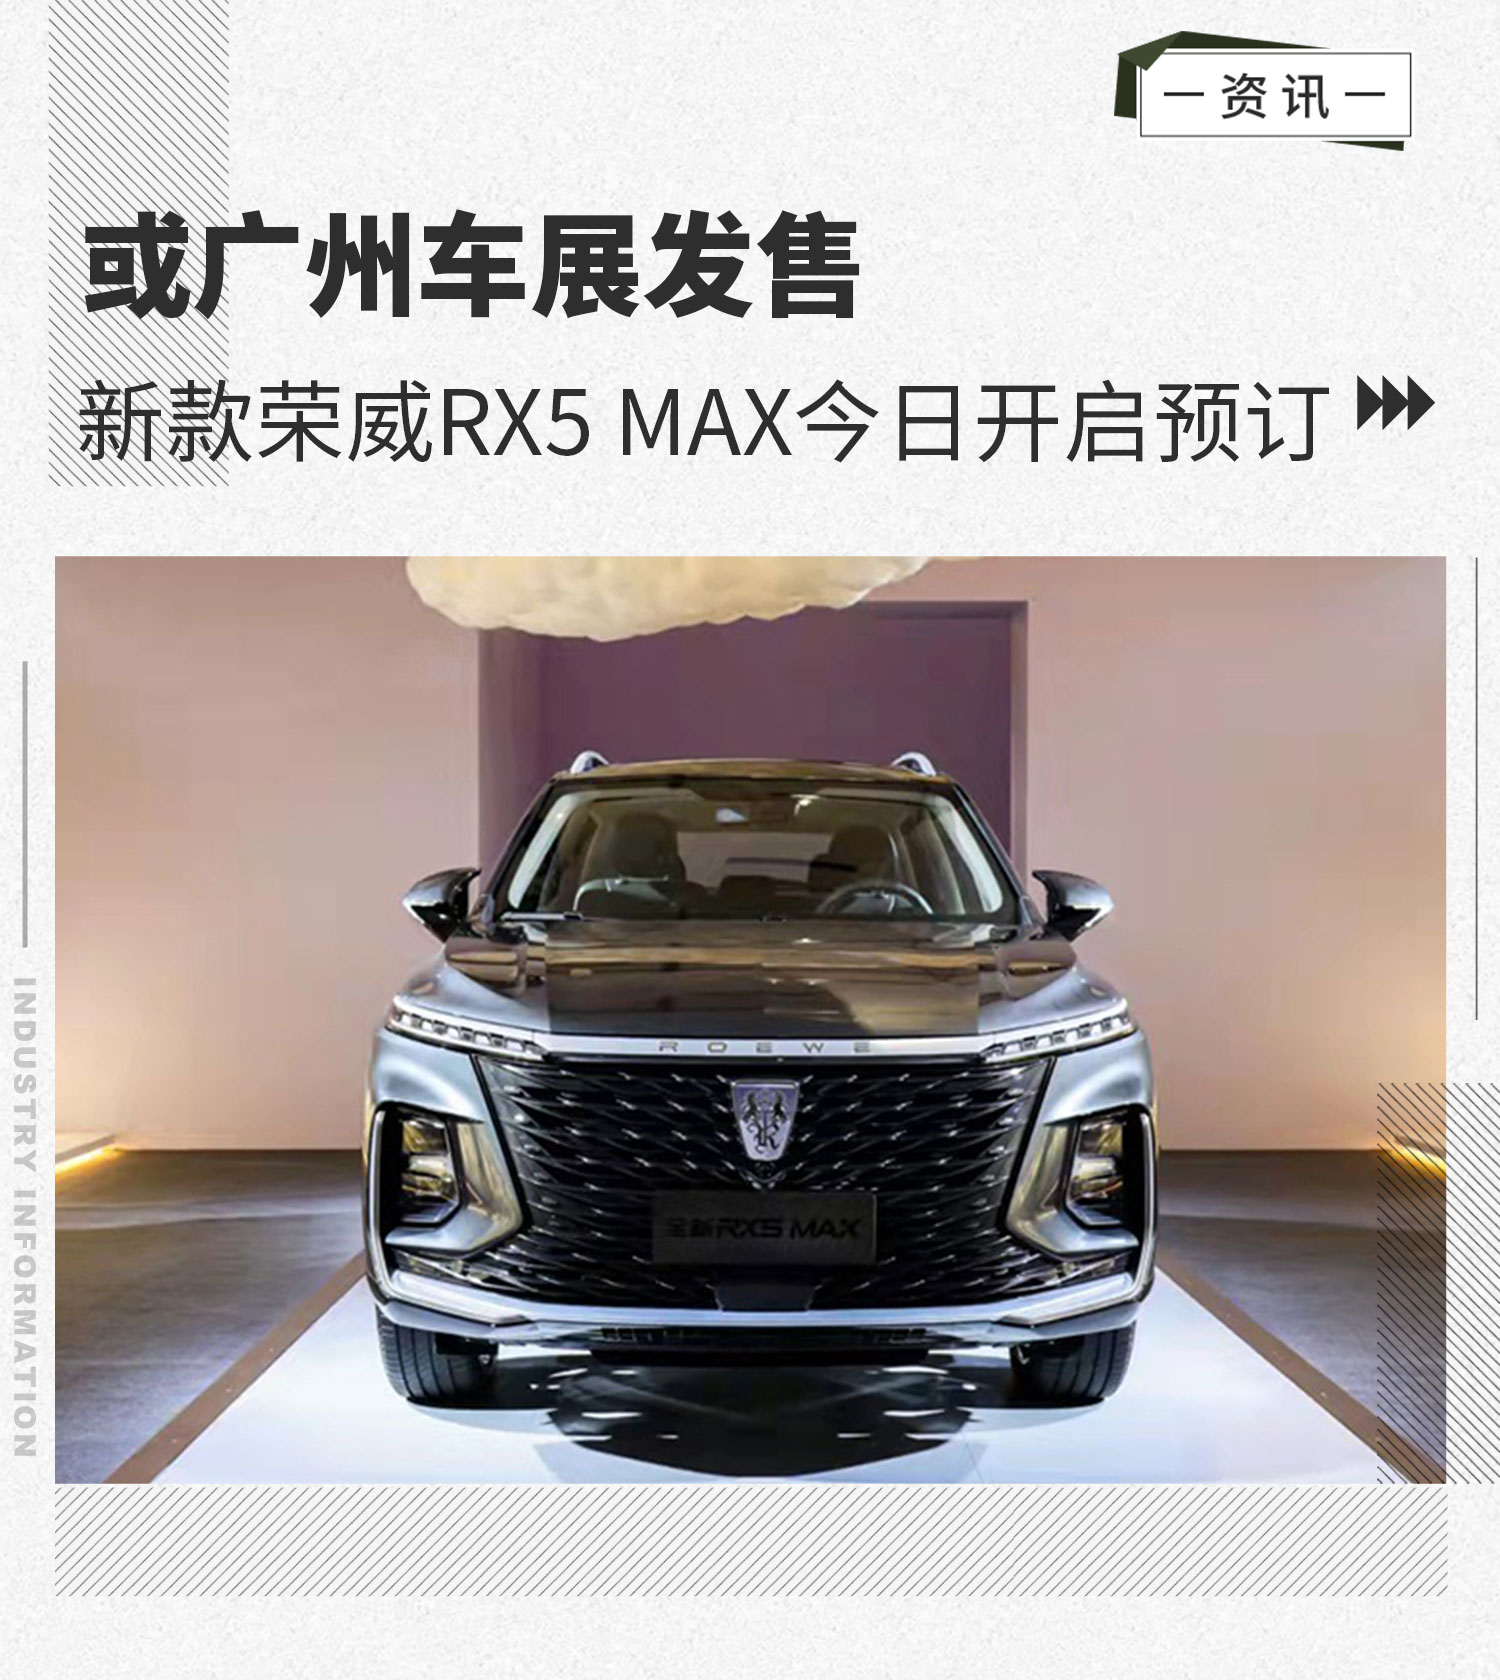 新款荣威RX5 MAX今日开启预订 或广州车展发售